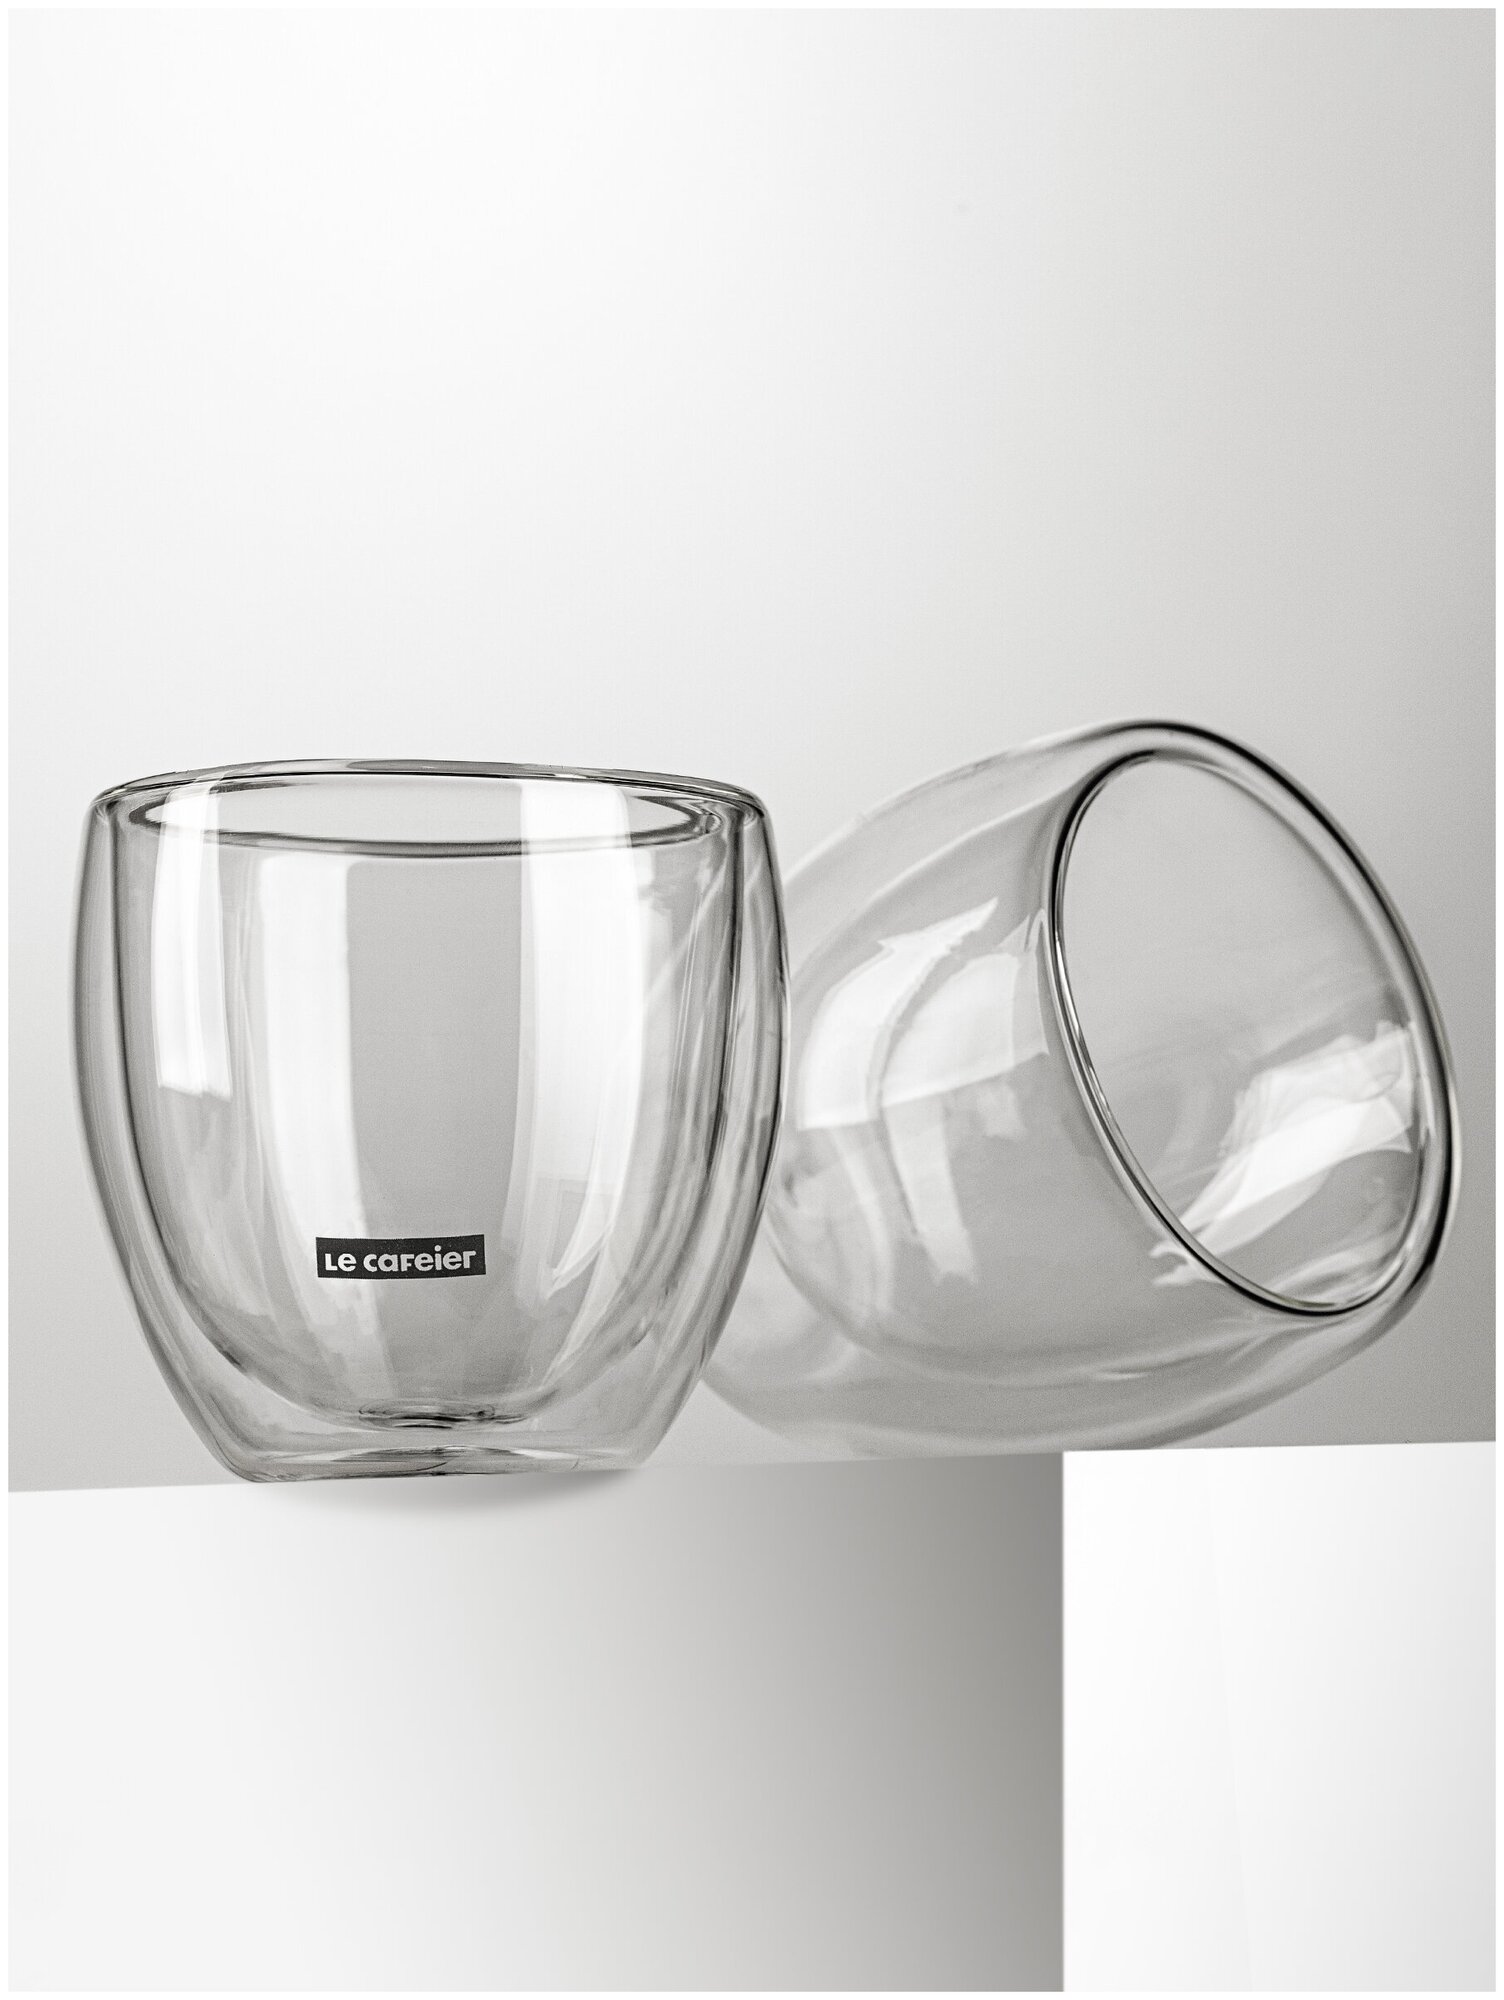 Набор стеклянных стаканов с двойными стенками "LE CAFEIER DG101-250", 250 мл х 2 шт